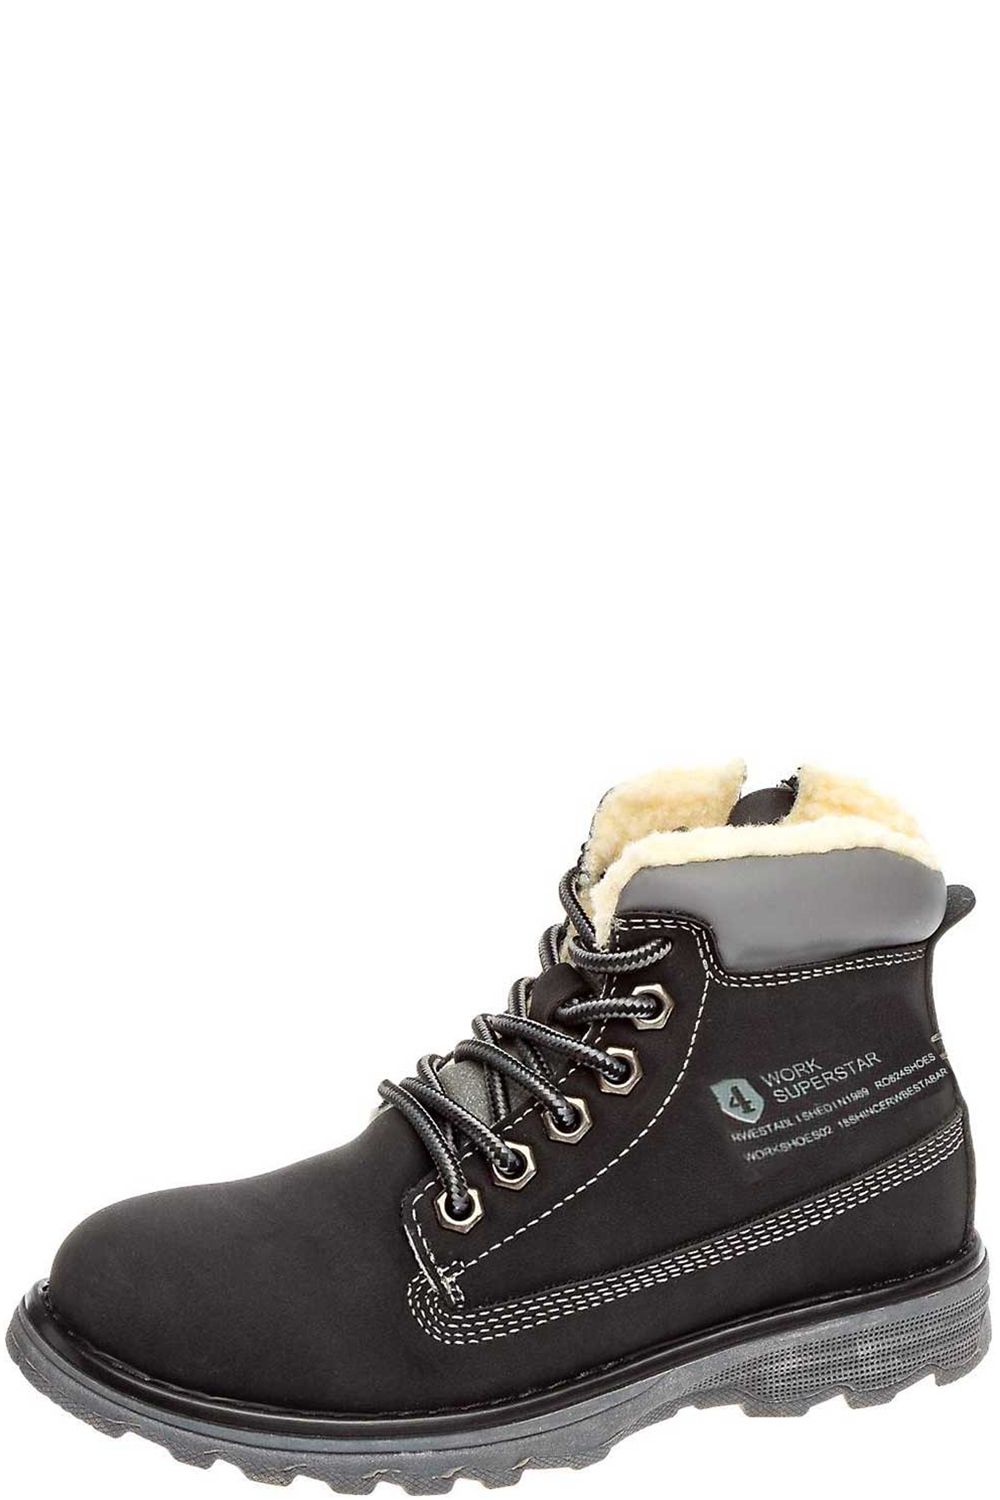 Ботинки Crosby, размер 31, цвет черный 288350/01-01 - фото 1